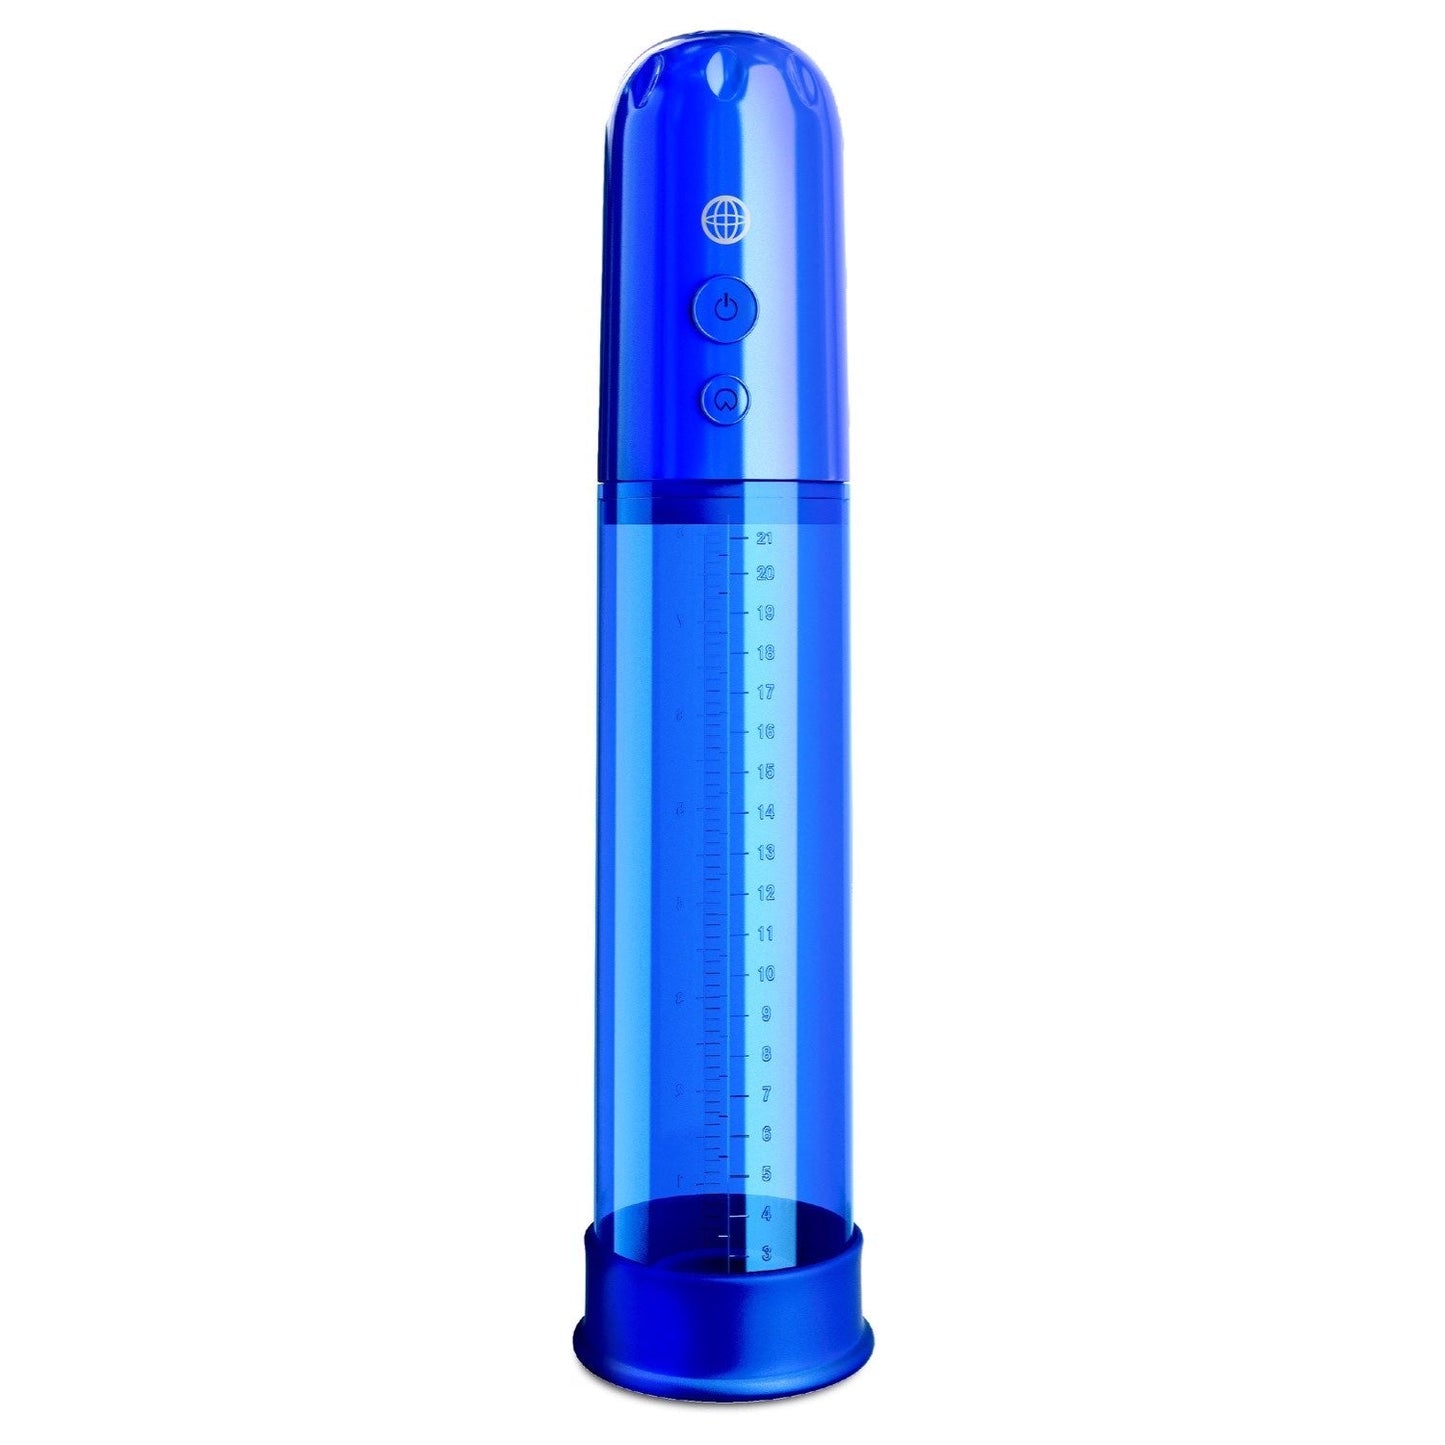 Auto-Vac Power Pump - Blue Powered Penis Pump